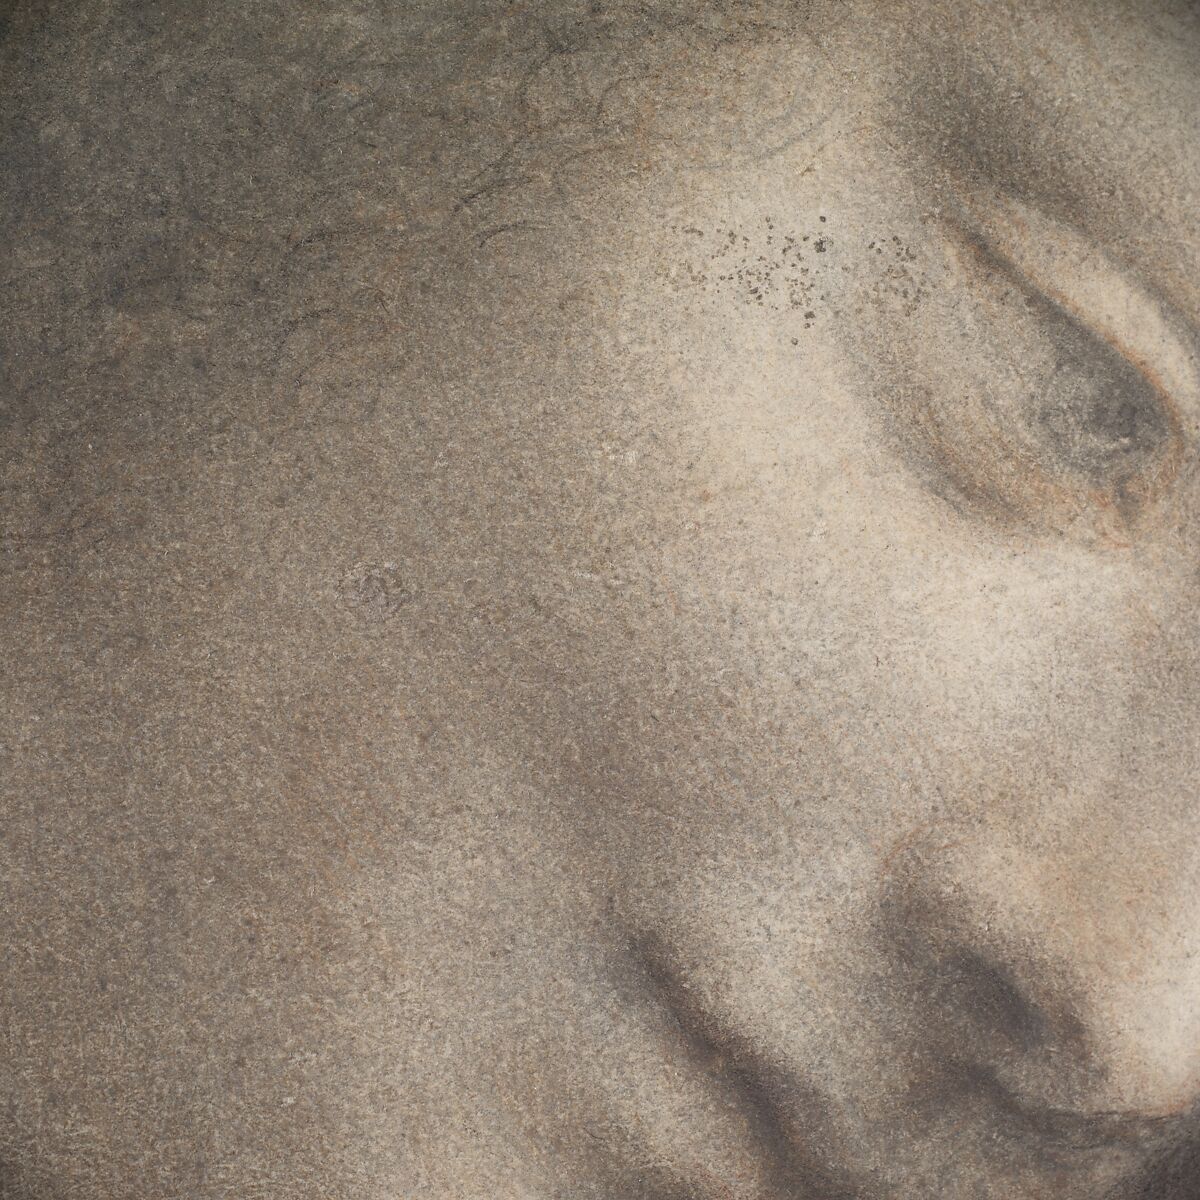 【右を向いた三分の一のビューでの聖母の頭部　The Head of the Virgin in Three-Quarter View Facing Right】イタリア・ルネサンス期画家レオナルド・ダ・ヴィンチ（Leonardo da Vinci）